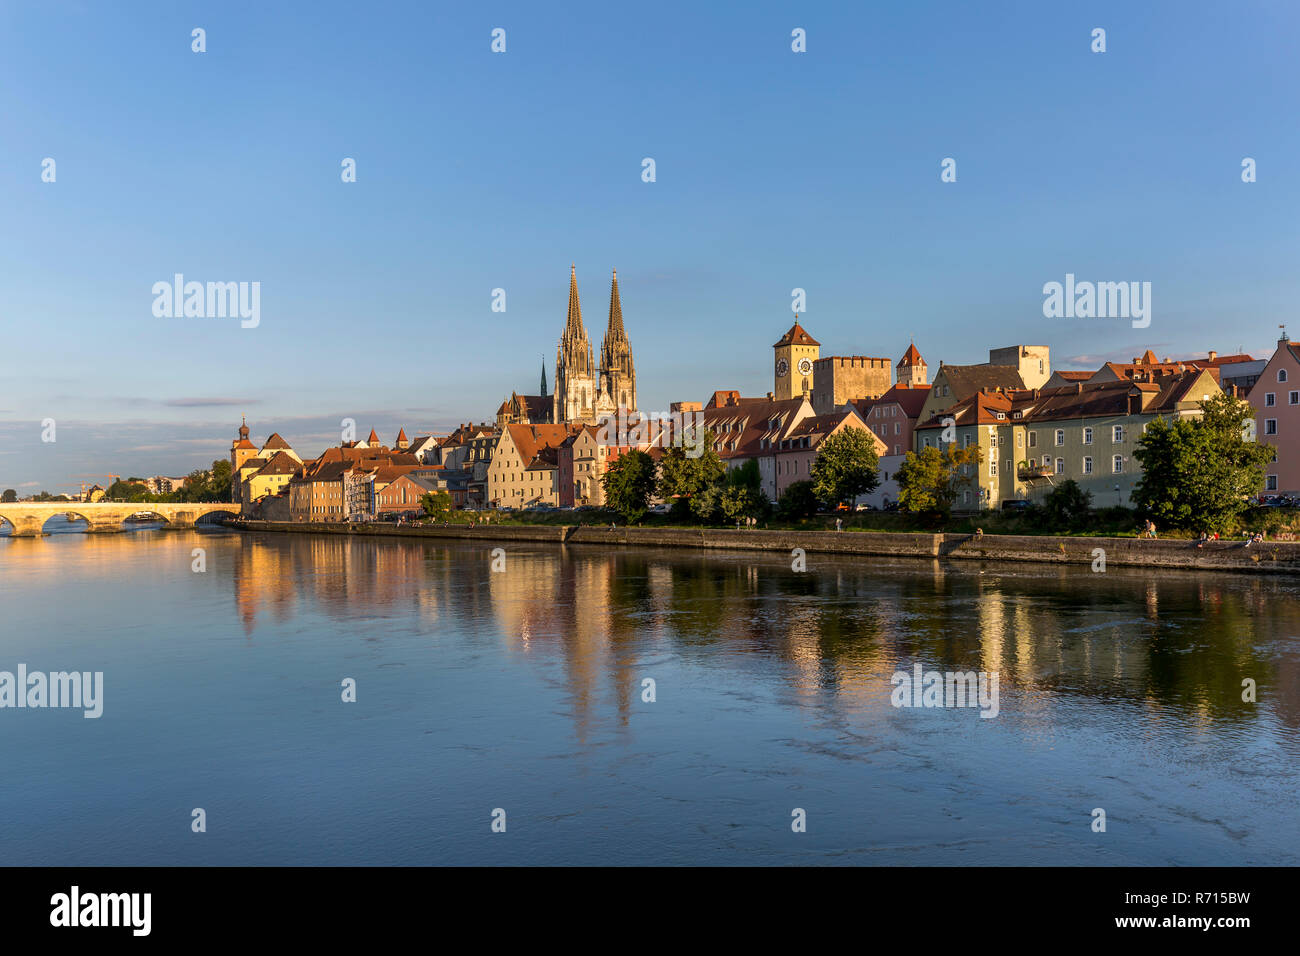 Vieille Ville avec le pont de pierre et la Cathédrale Saint-Pierre sur le Danube, Regensburg, Bavière, Allemagne Banque D'Images